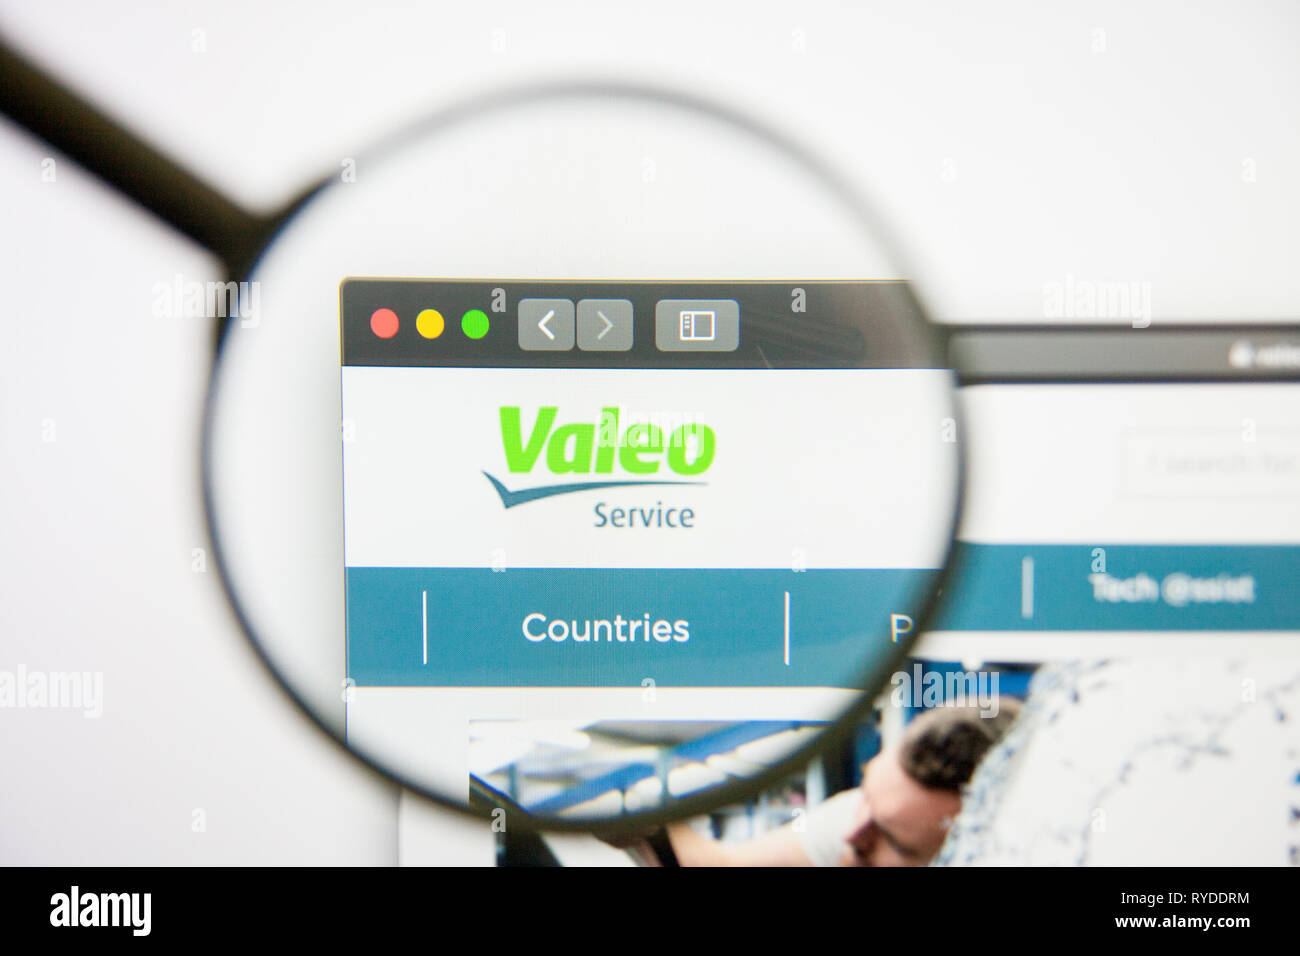 Los Angeles, California, USA - 14 February 2019: Valeo website homepage. Valeo logo visible on screen. Stock Photo